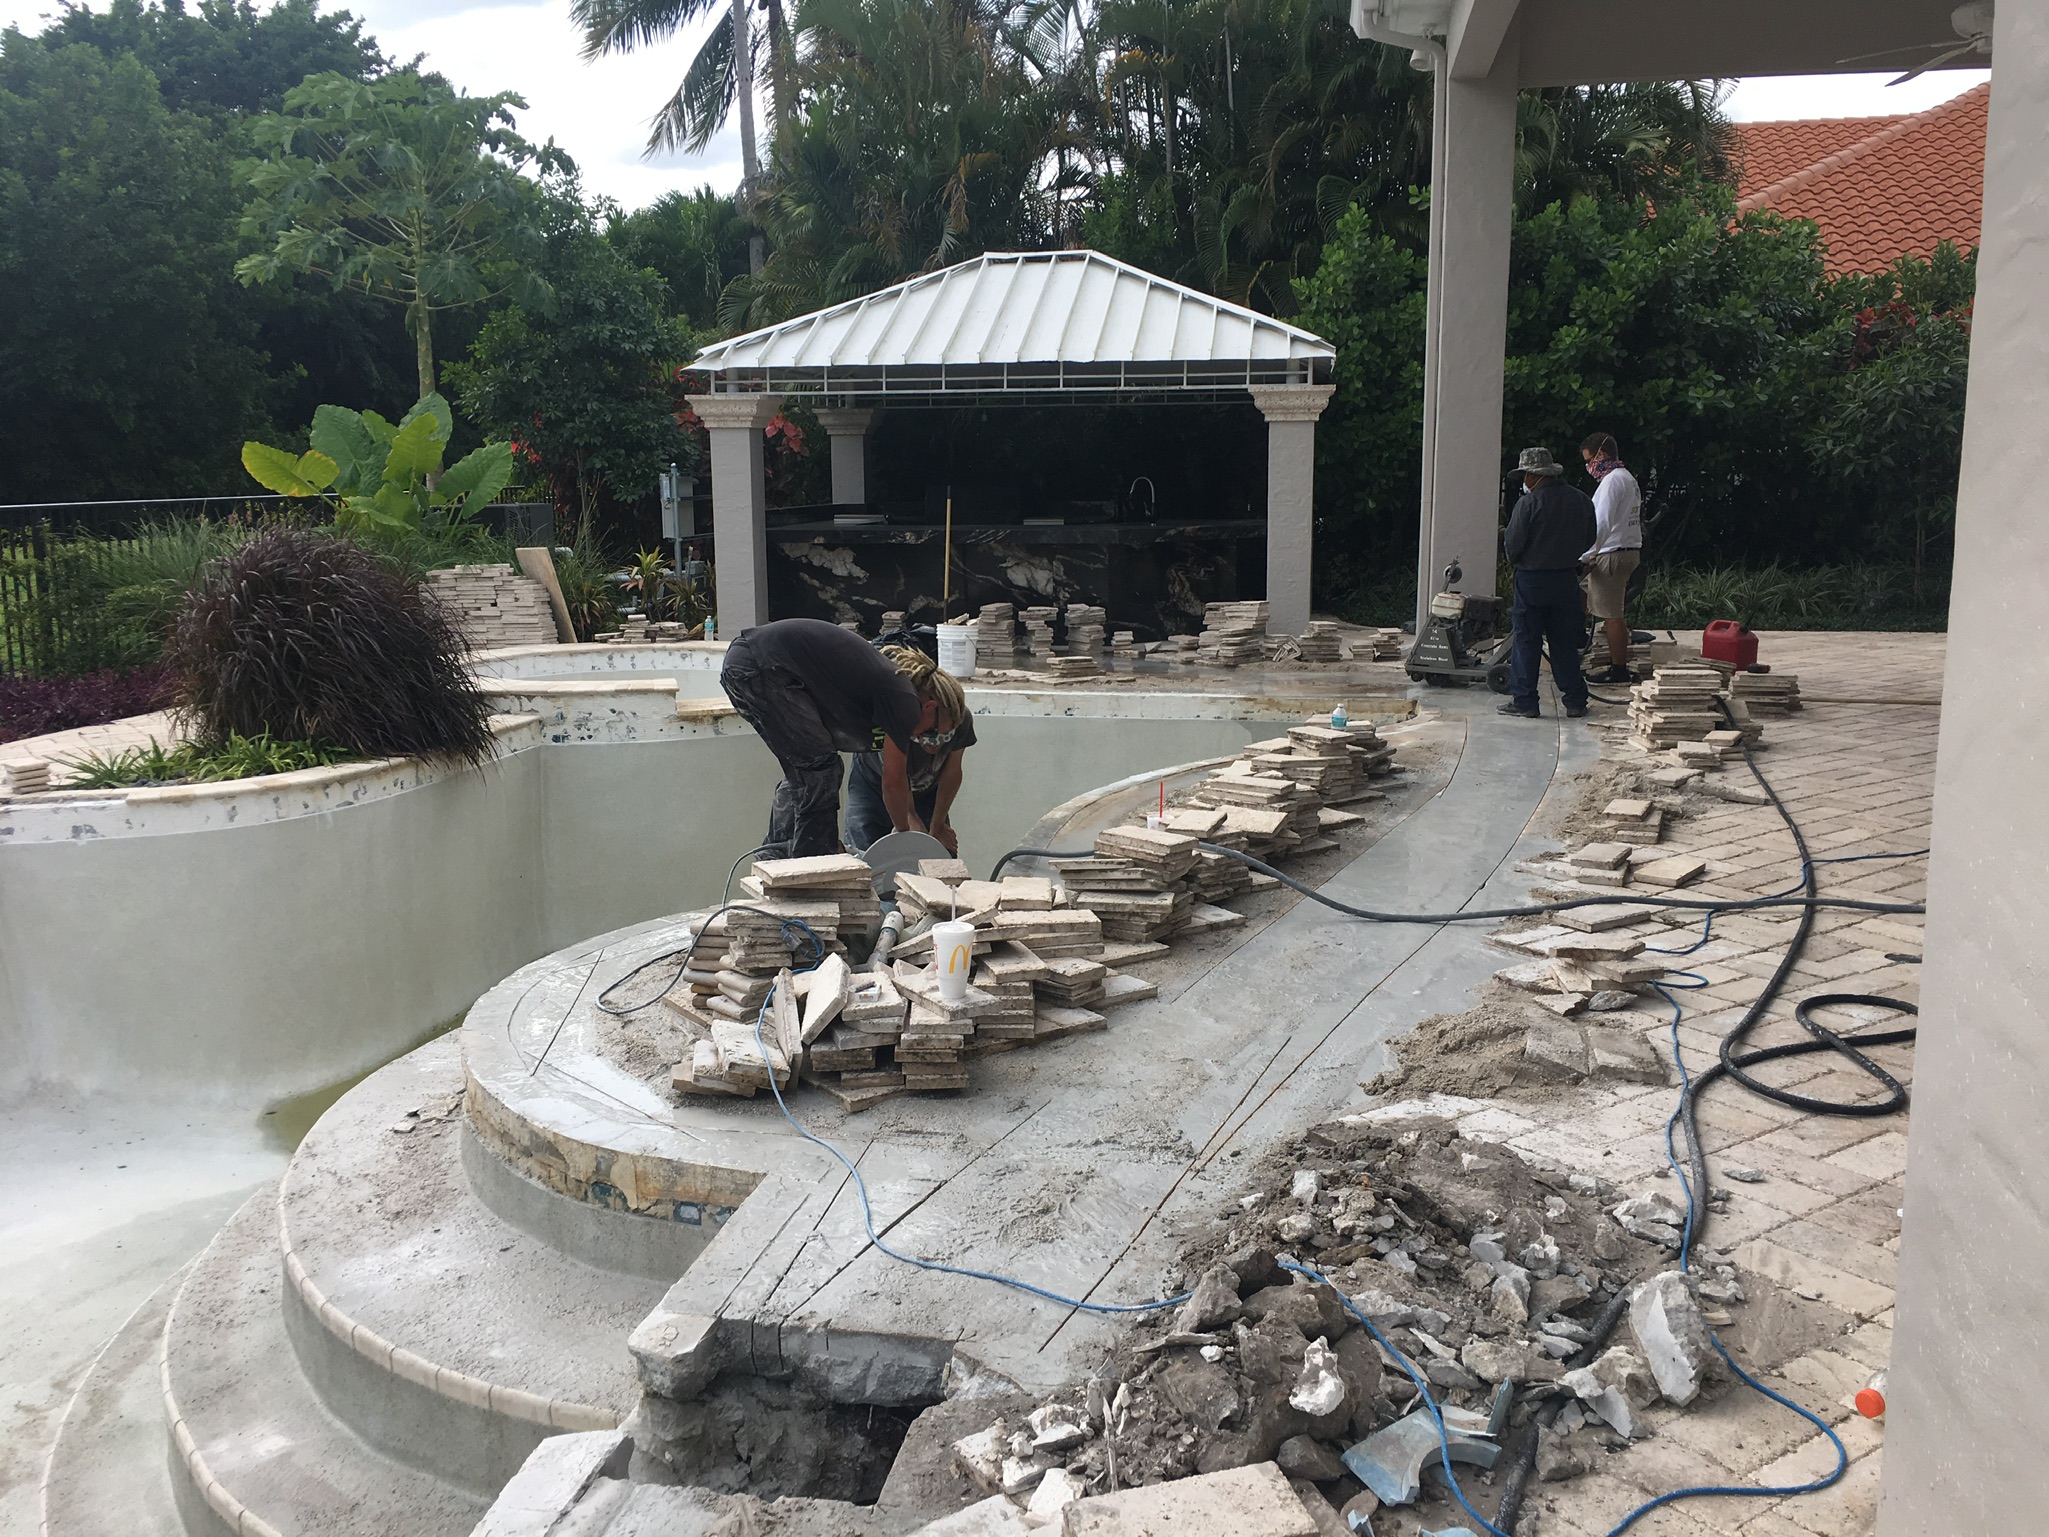 boca raton pool and patio renovation